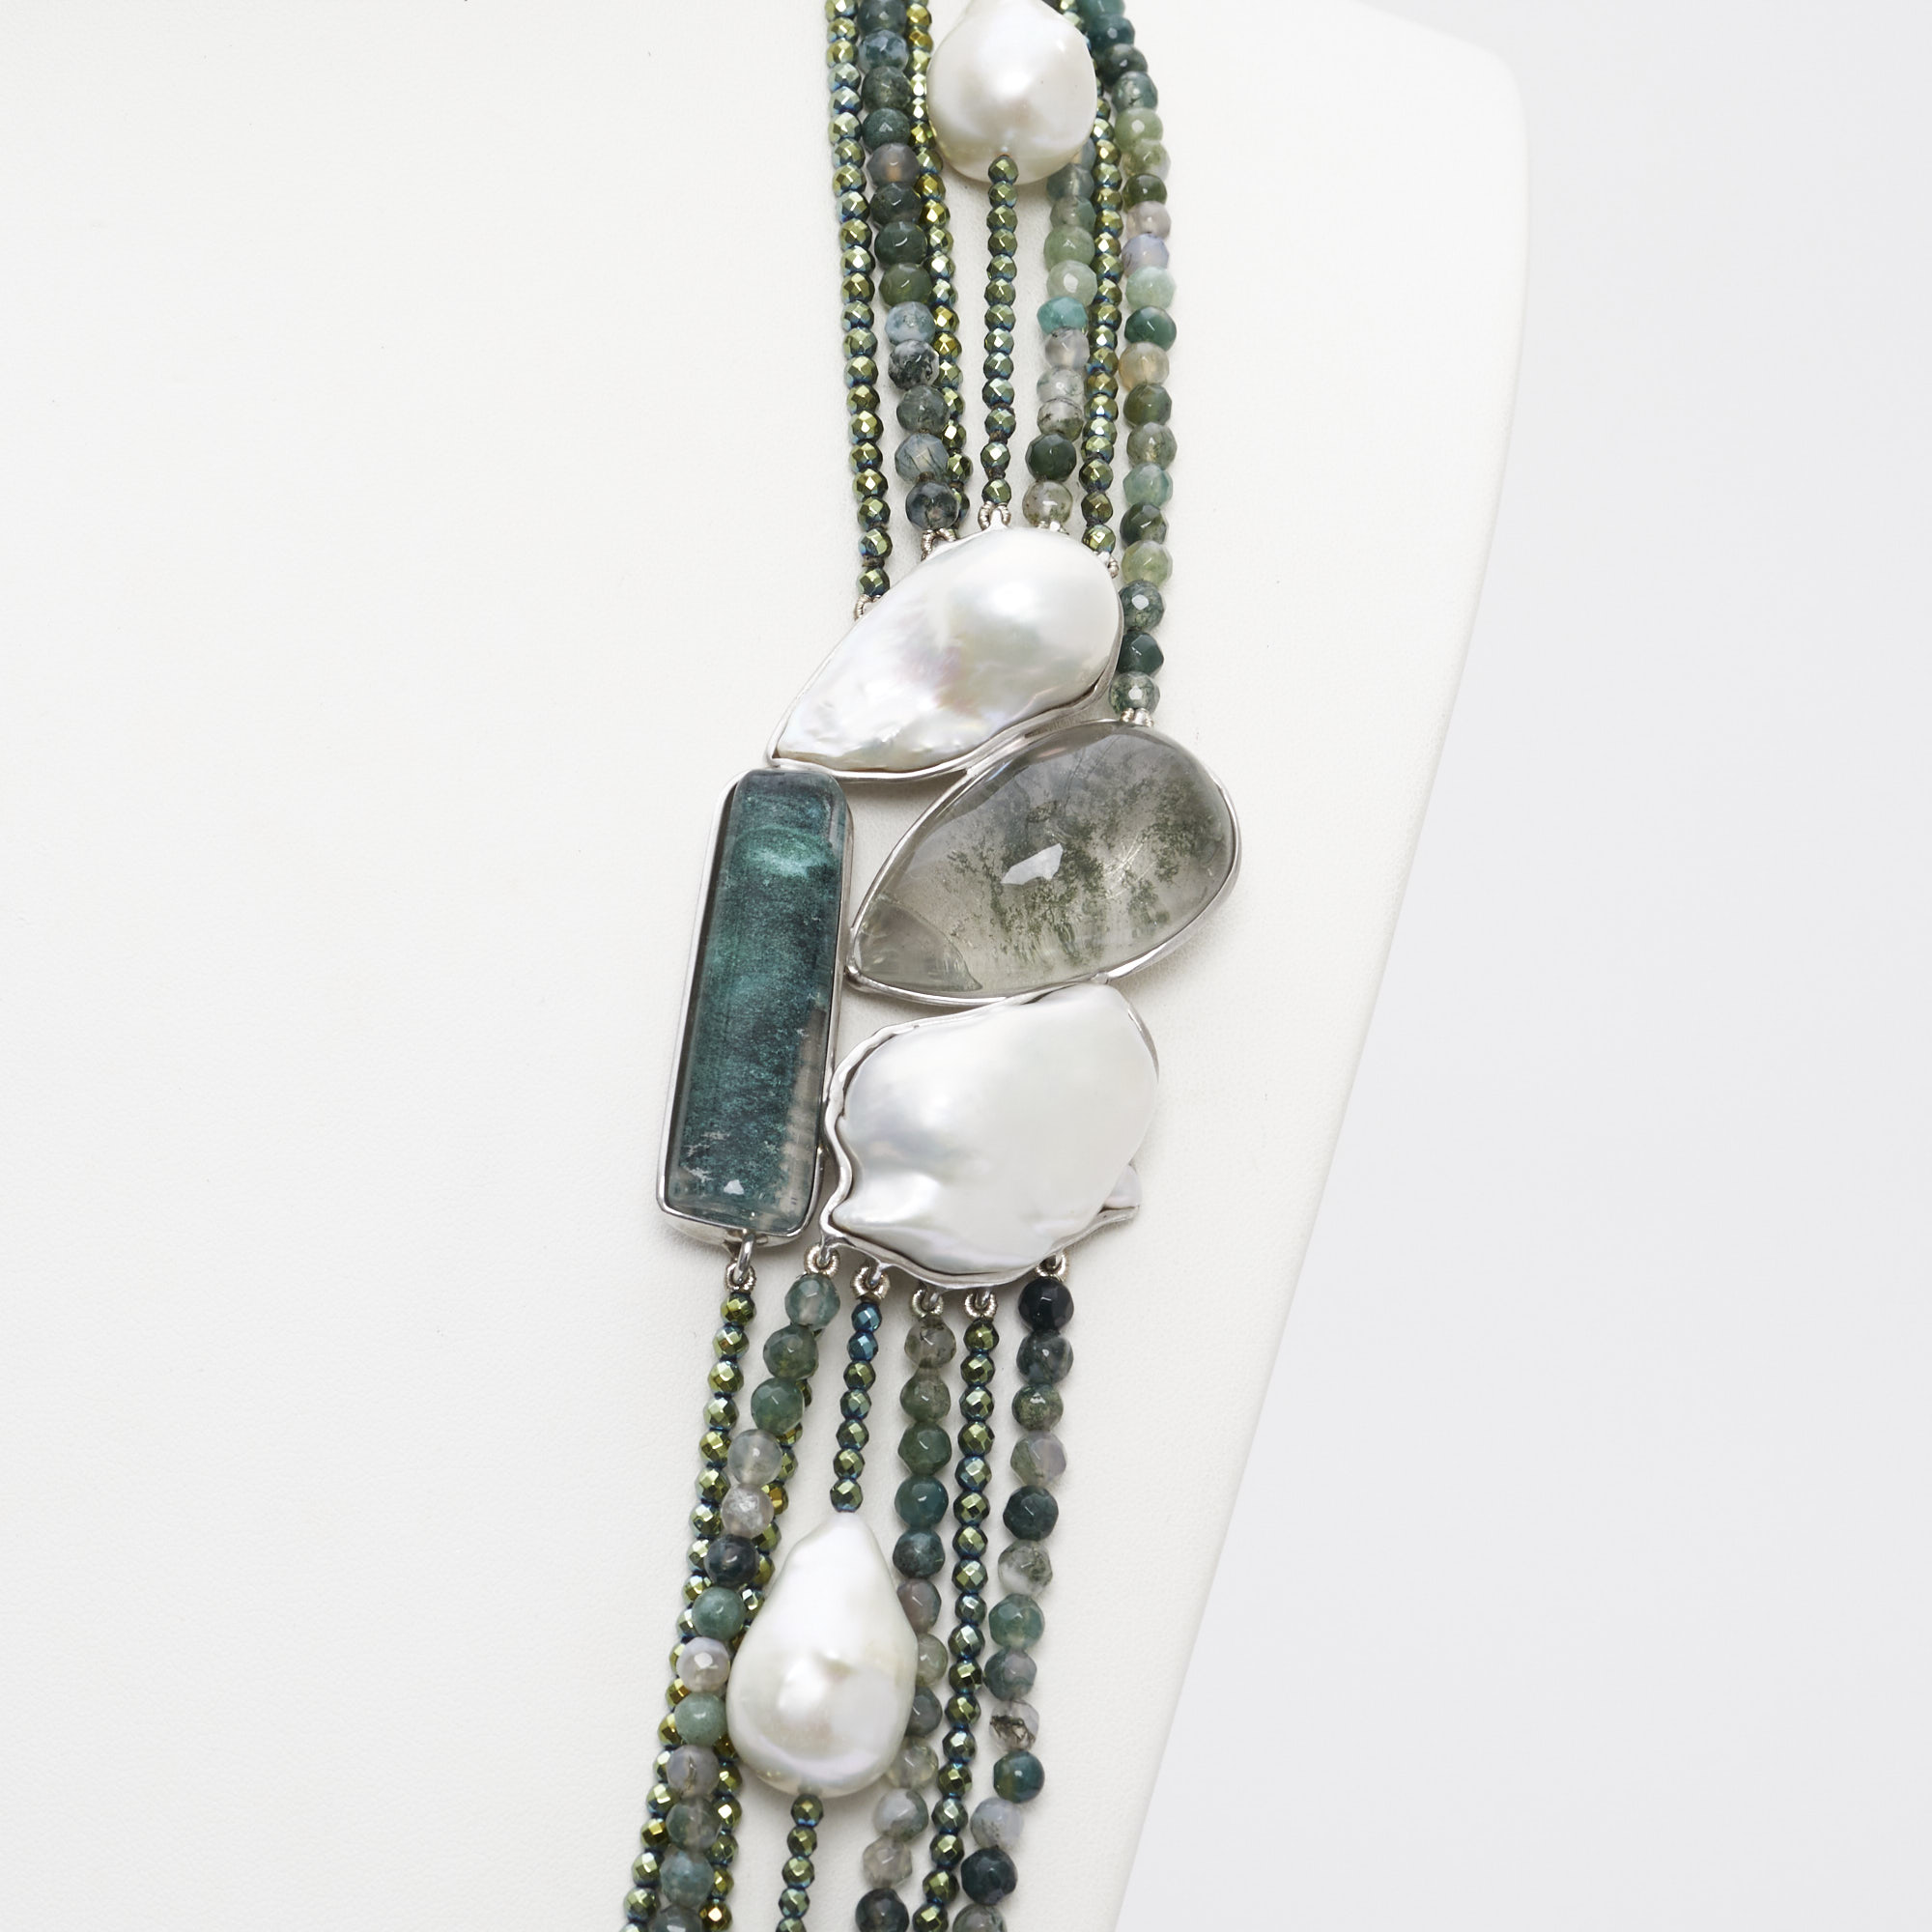 Collana a sette fili in Agata Muschiata, Ematite verde e Perle, con composizione laterale artigianale in Argento